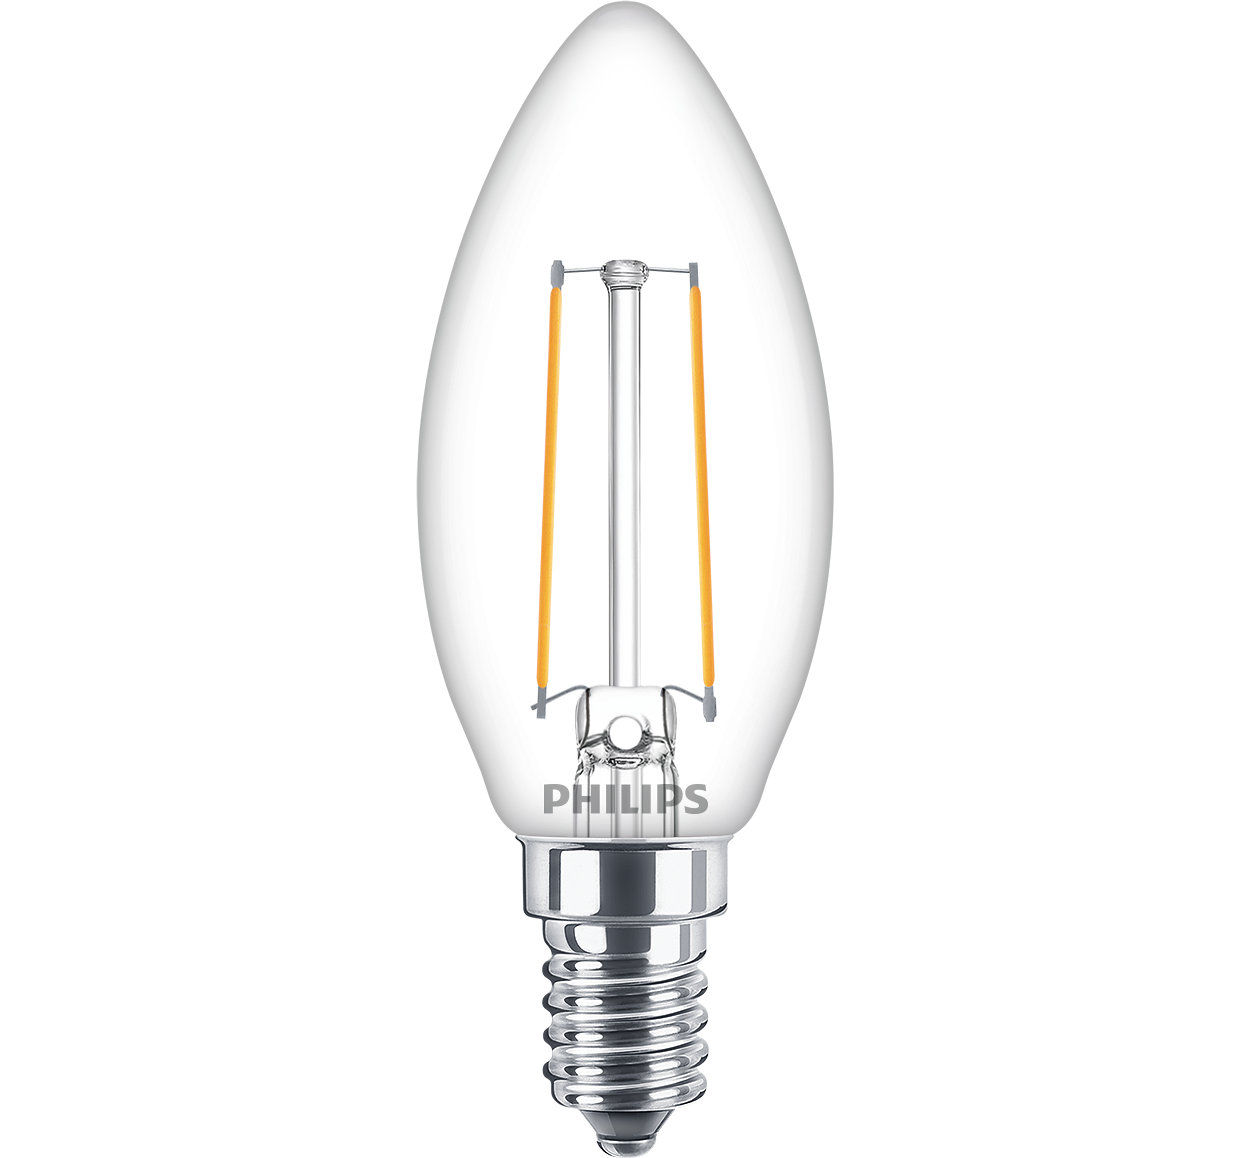 Lámparas clásicas LED de filamento para iluminación decorativa